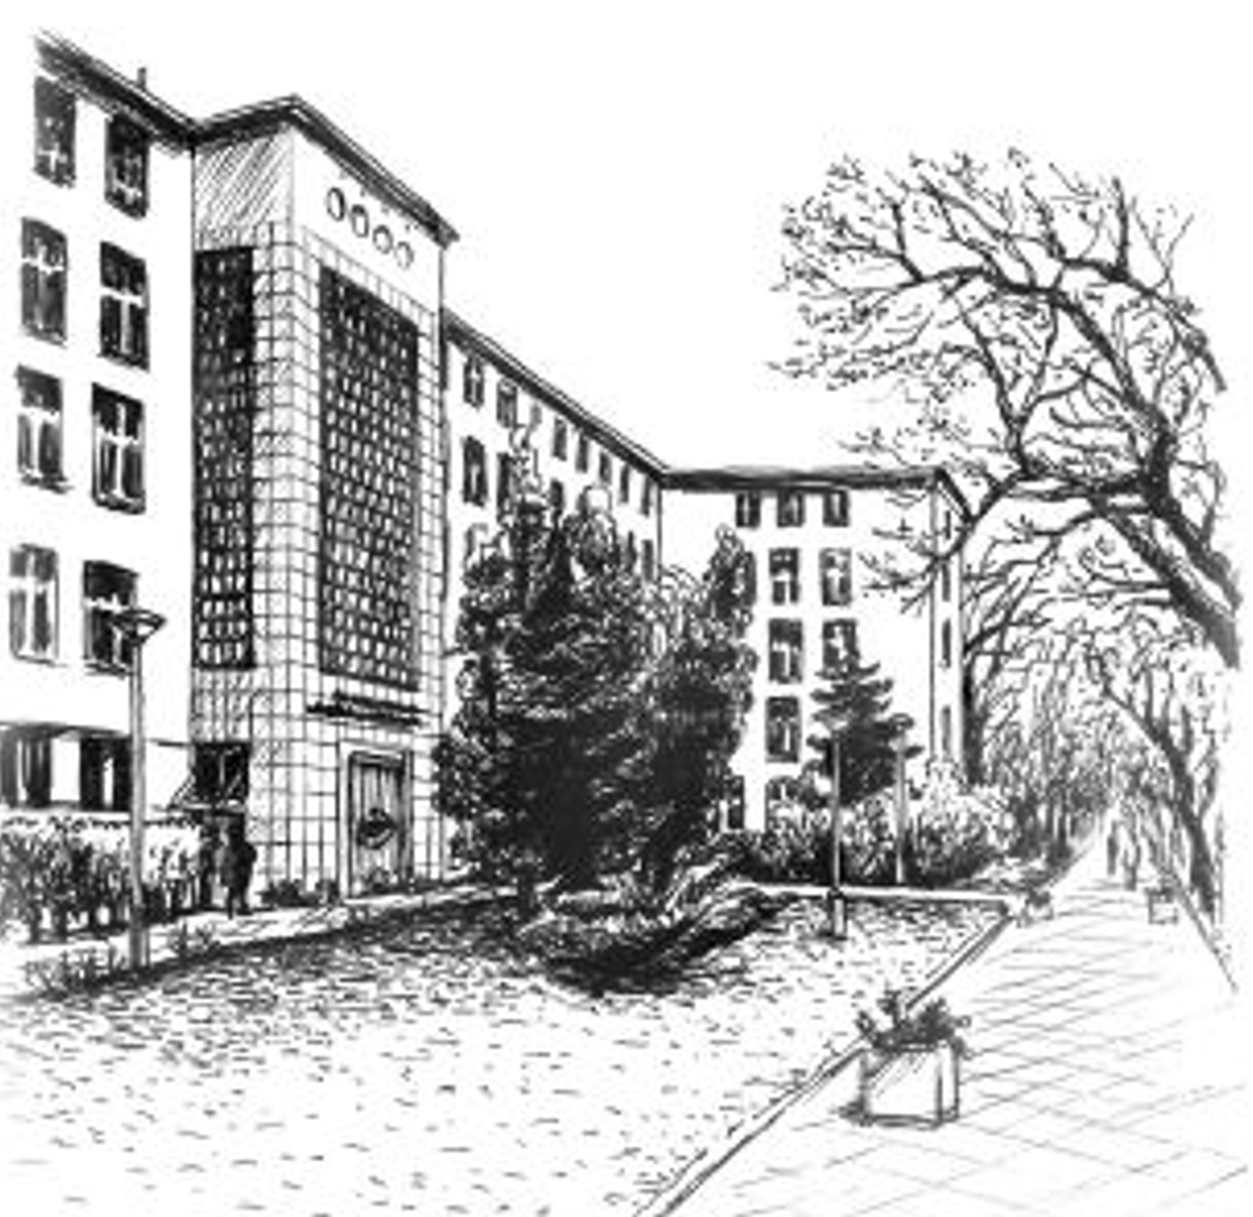 Czarno-biały widok perspektywiczny 4-piętrowego budynku z elementami zieleni na pierwzym planie